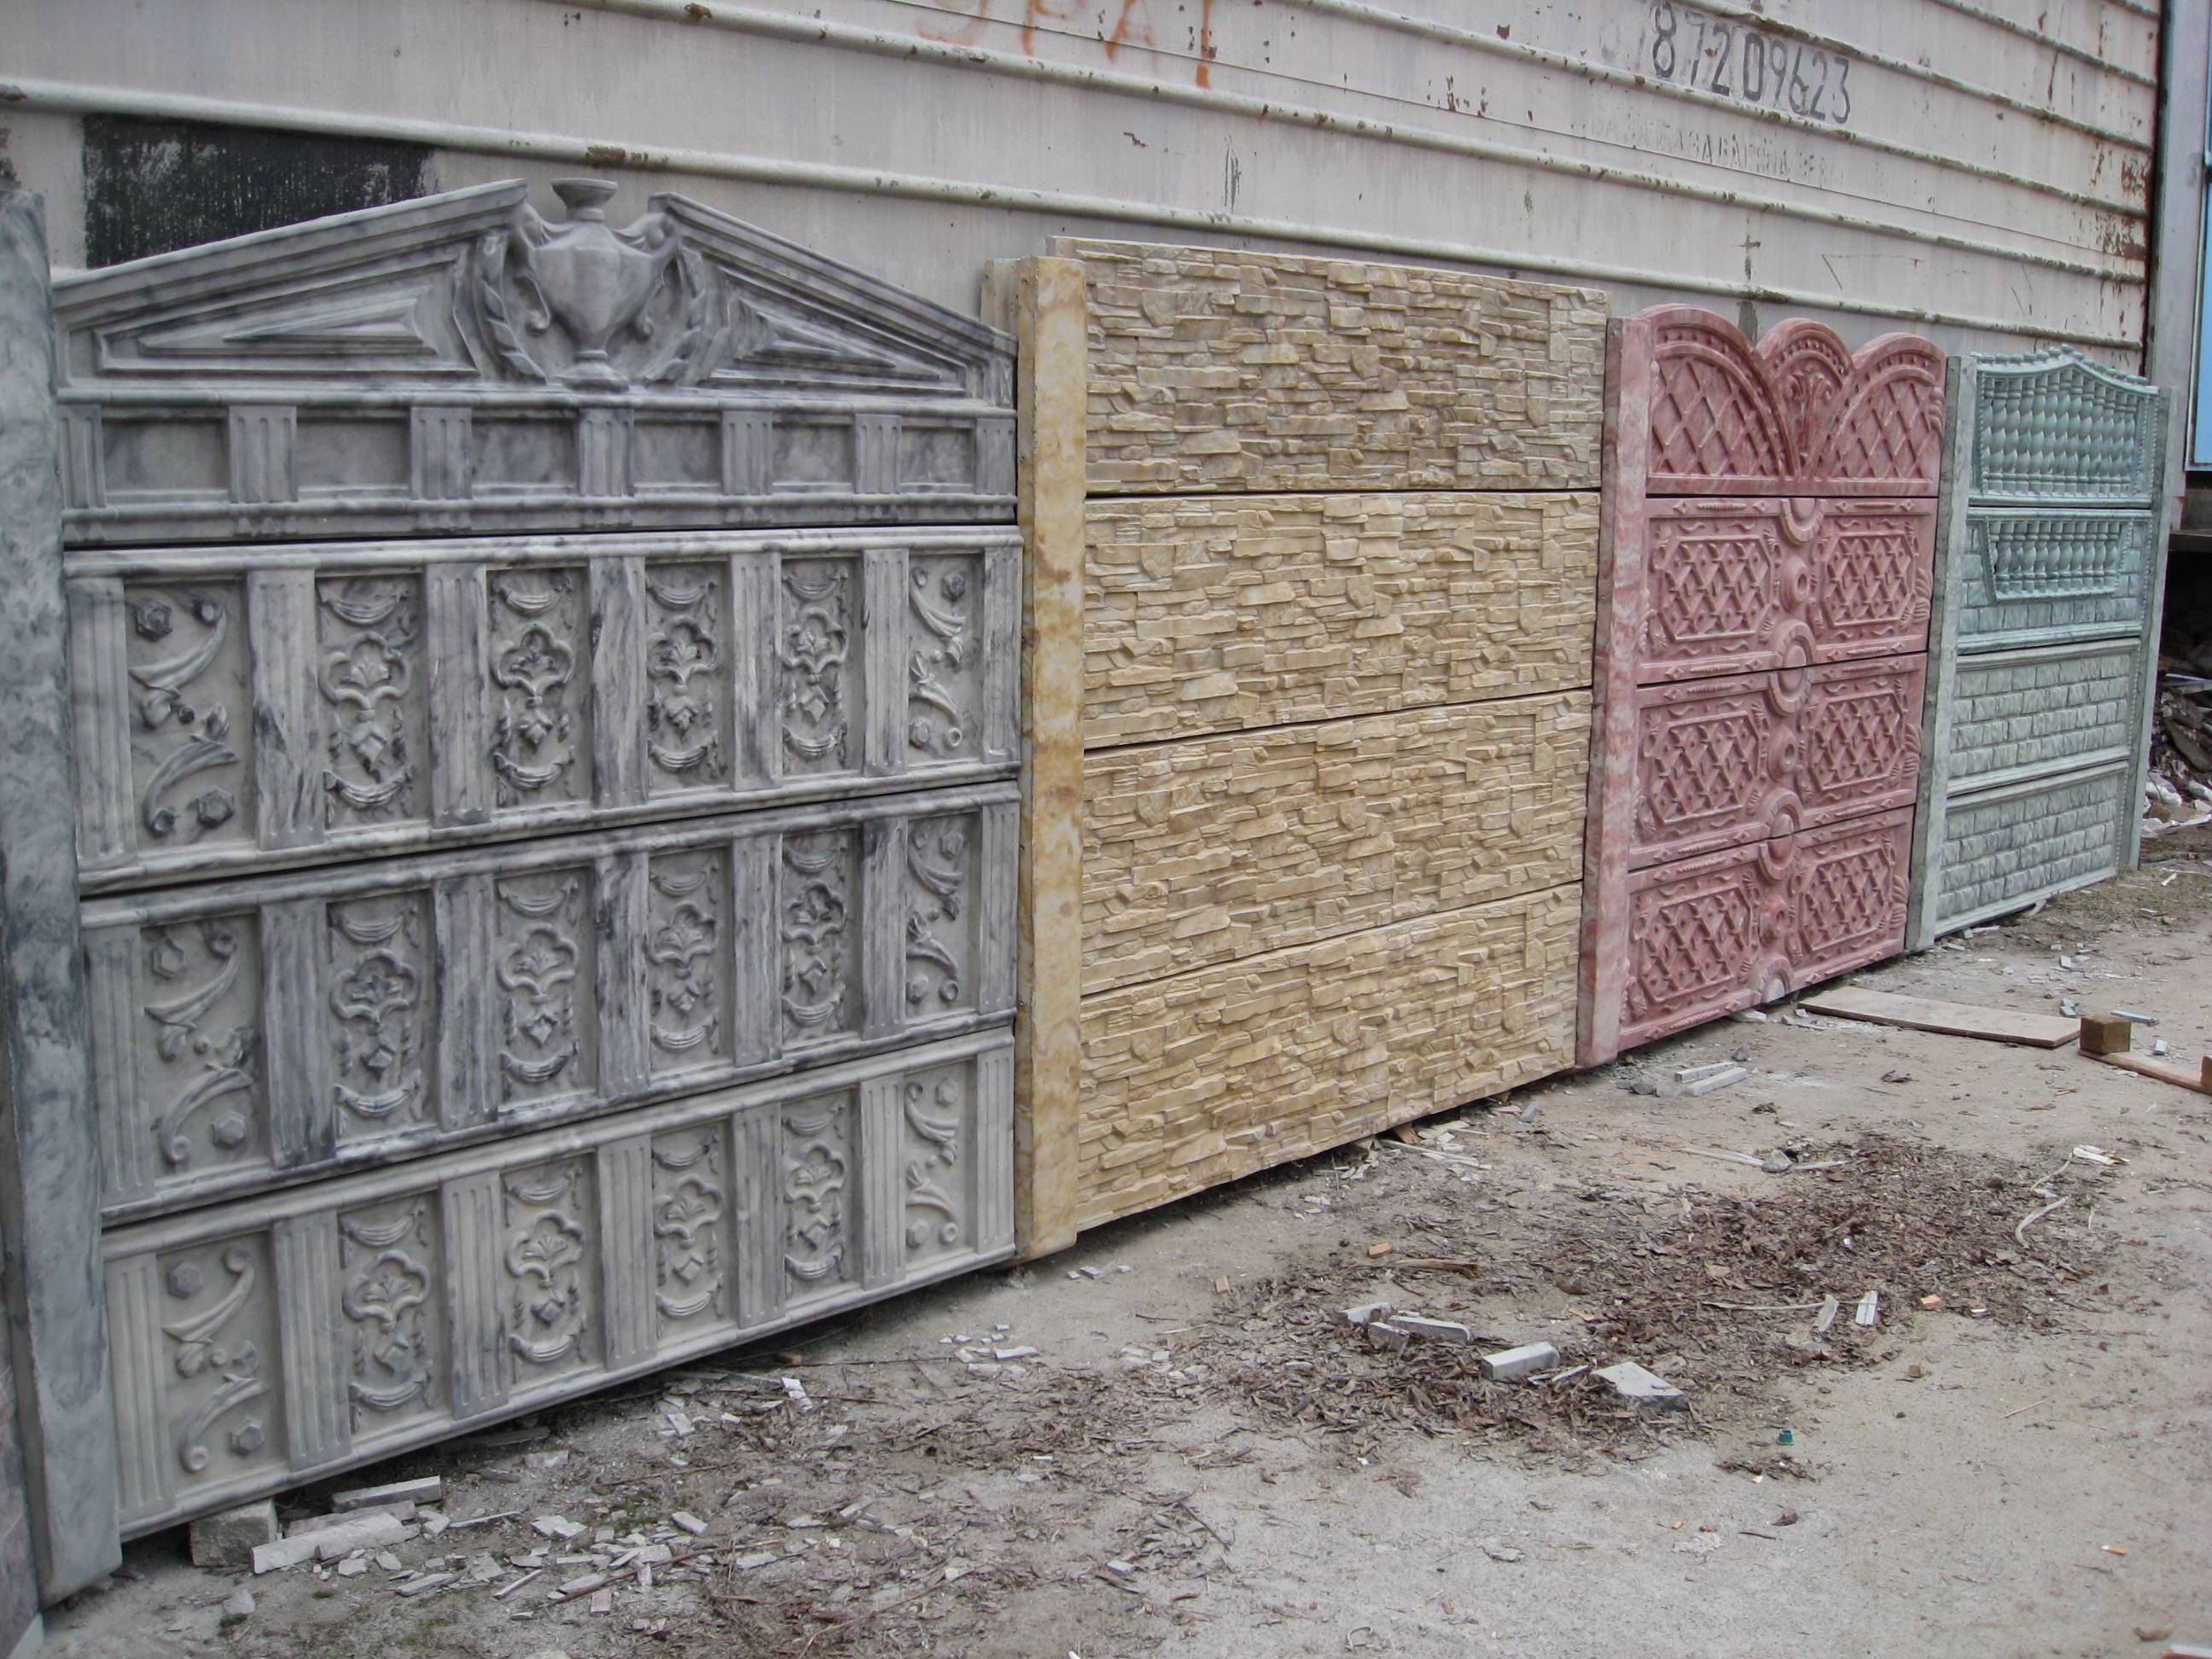 Как самостоятельно построить забор из бетона